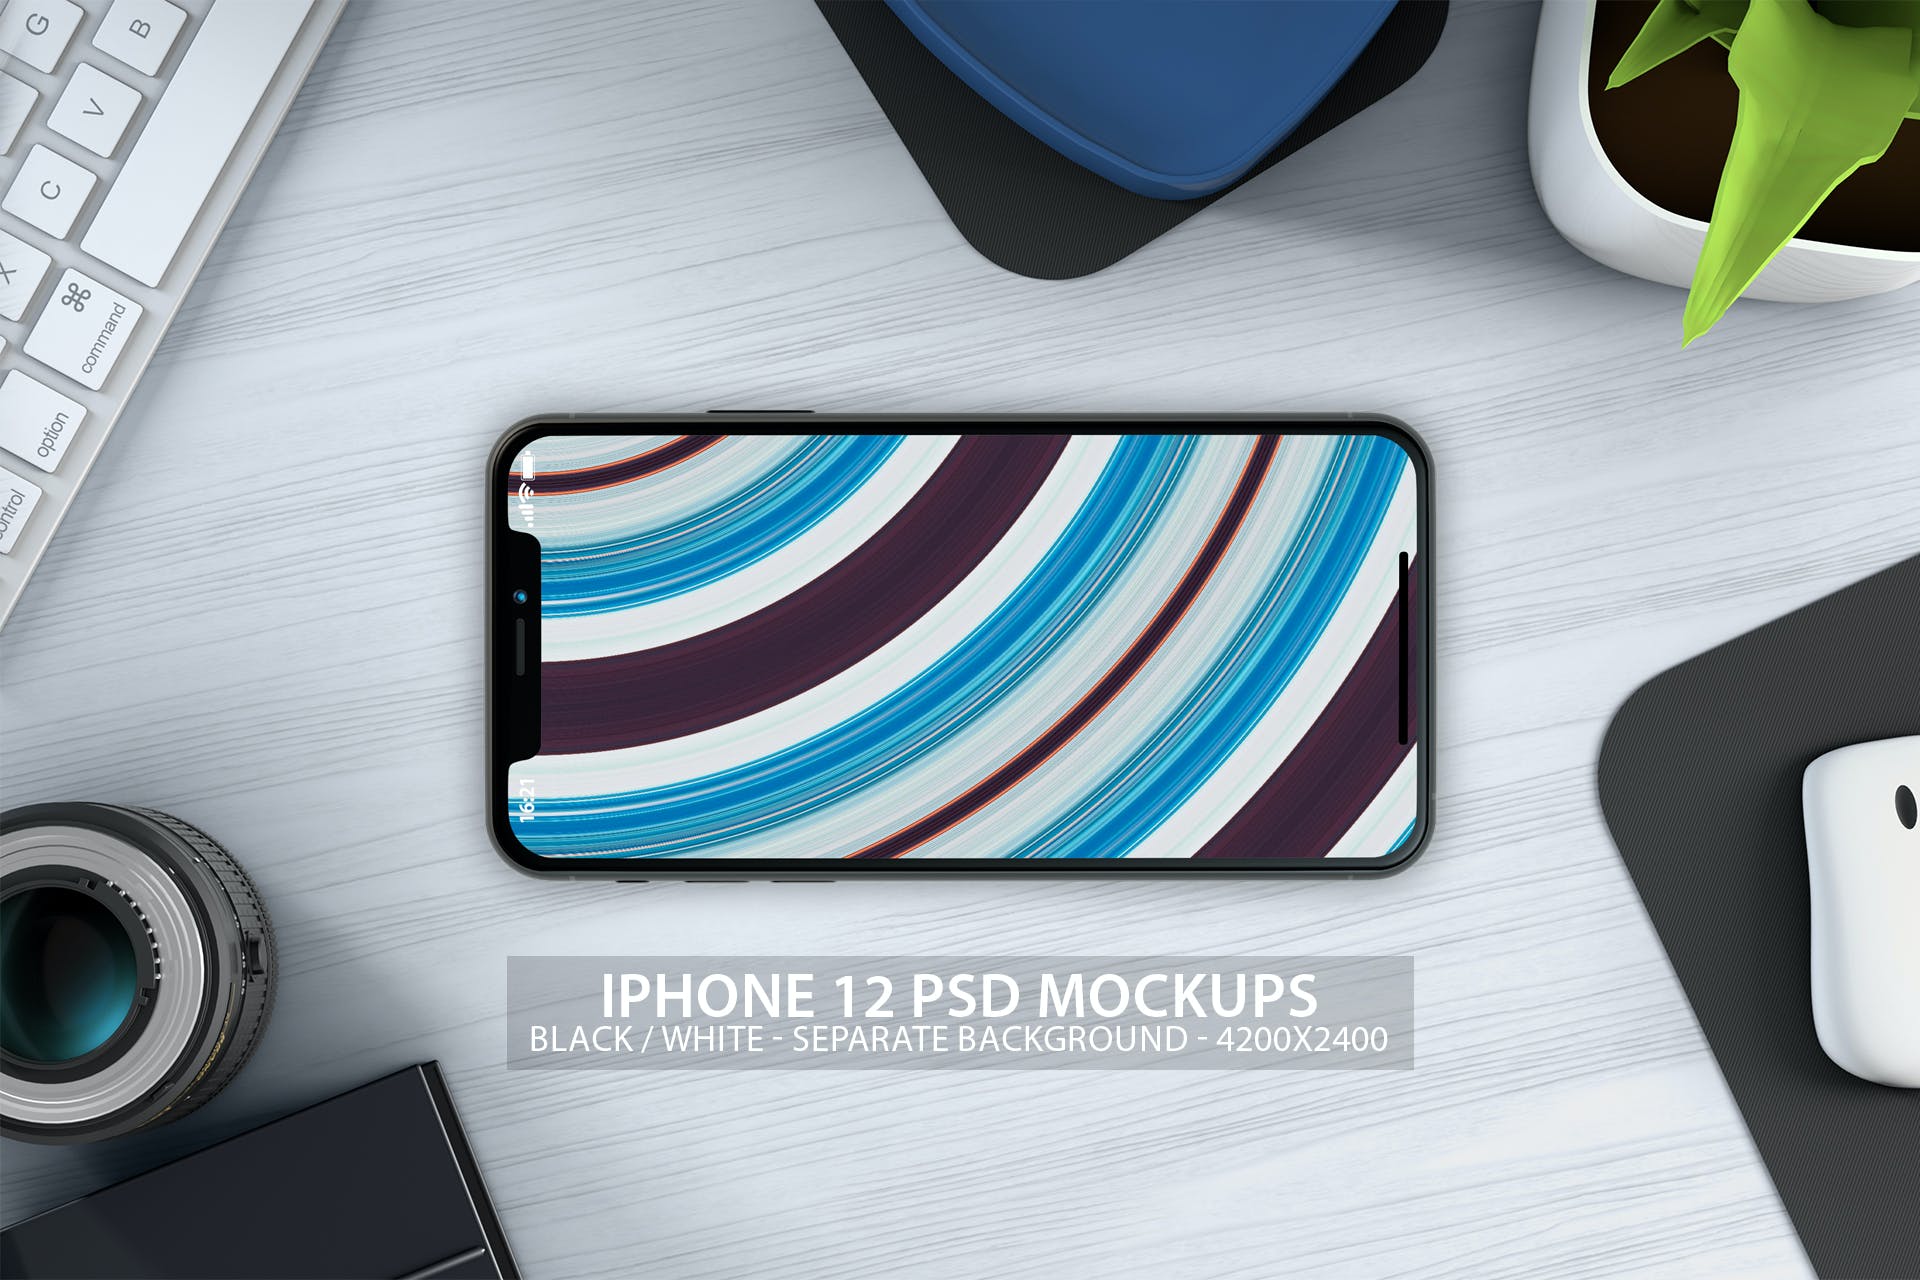 简约桌面背景iPhone12苹果手机psd样机模板v1 iPhone 12 PSD Mockups with Clean Background